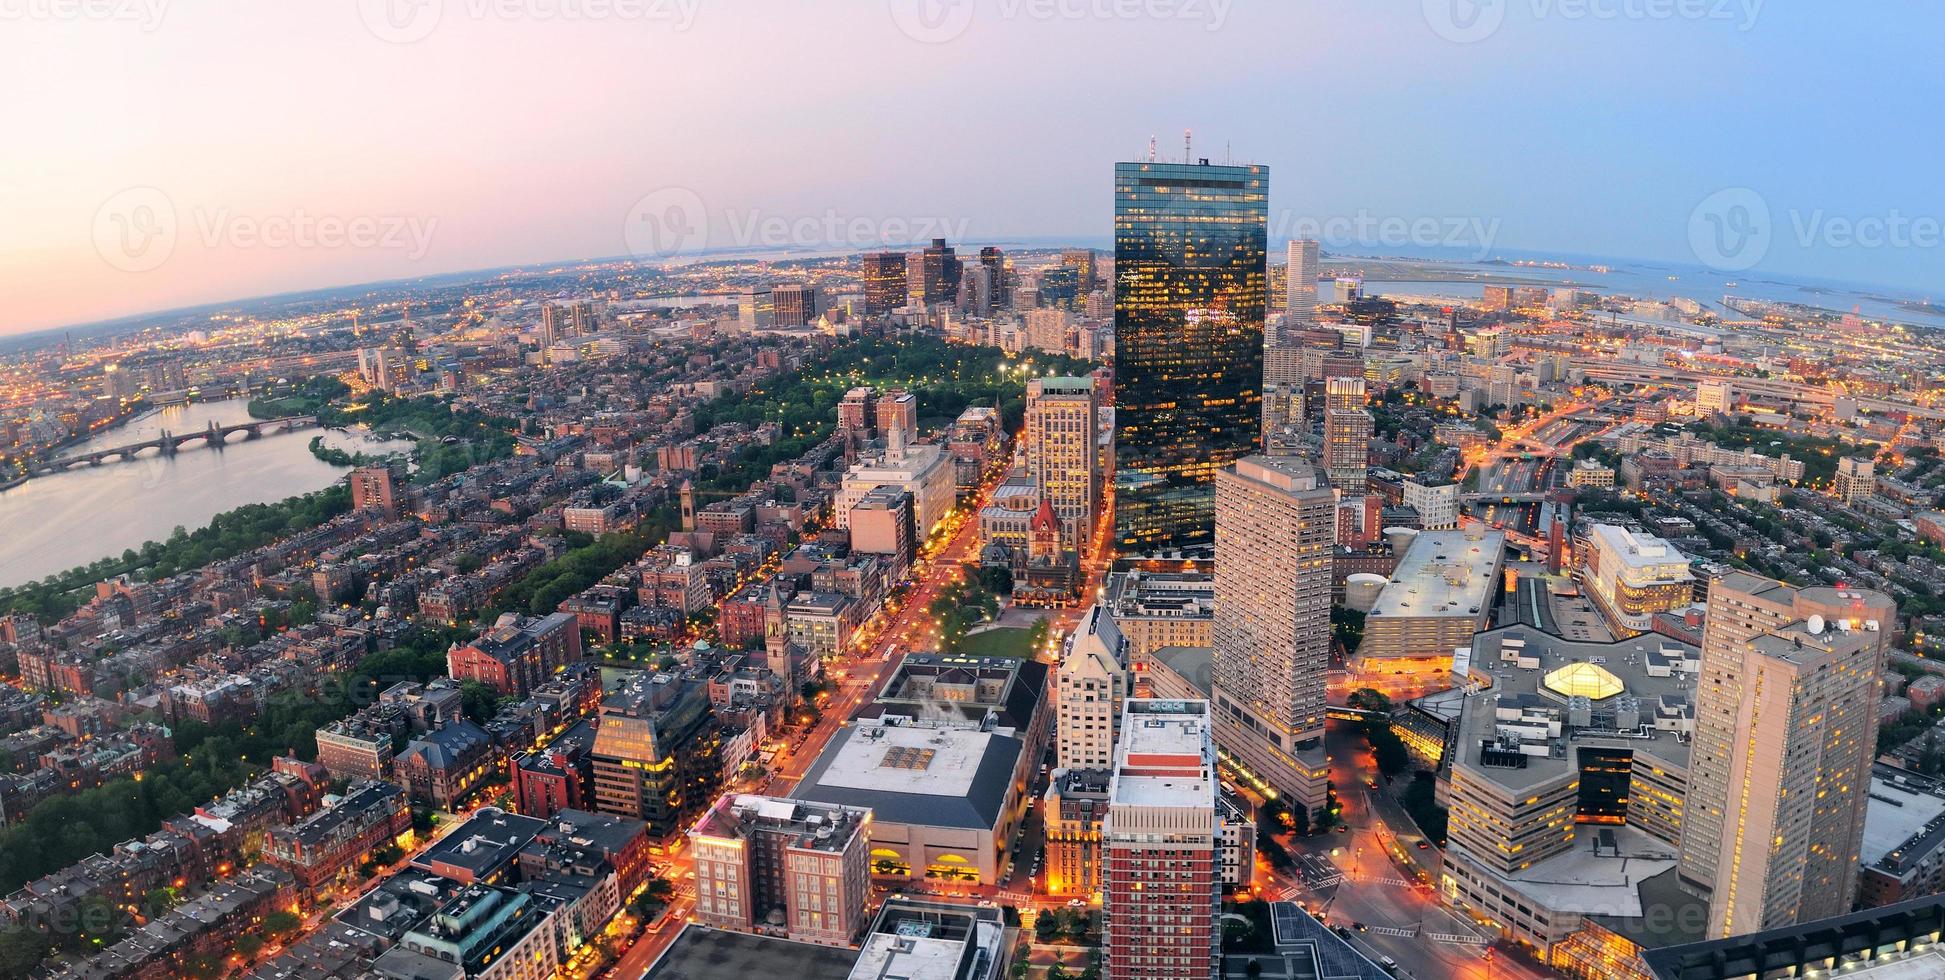 vista aerea di Boston foto